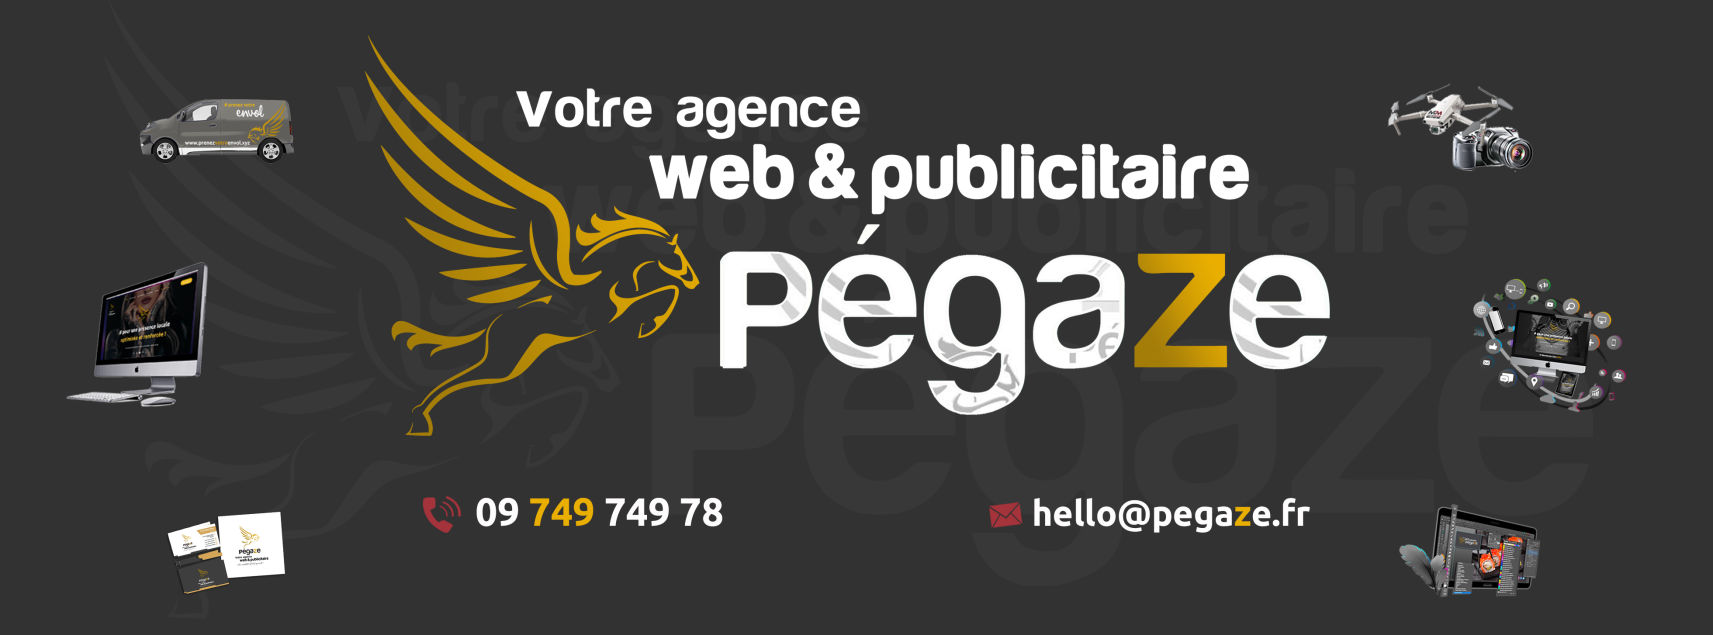 Agence web et publicitaire dans les Hauts-de-France